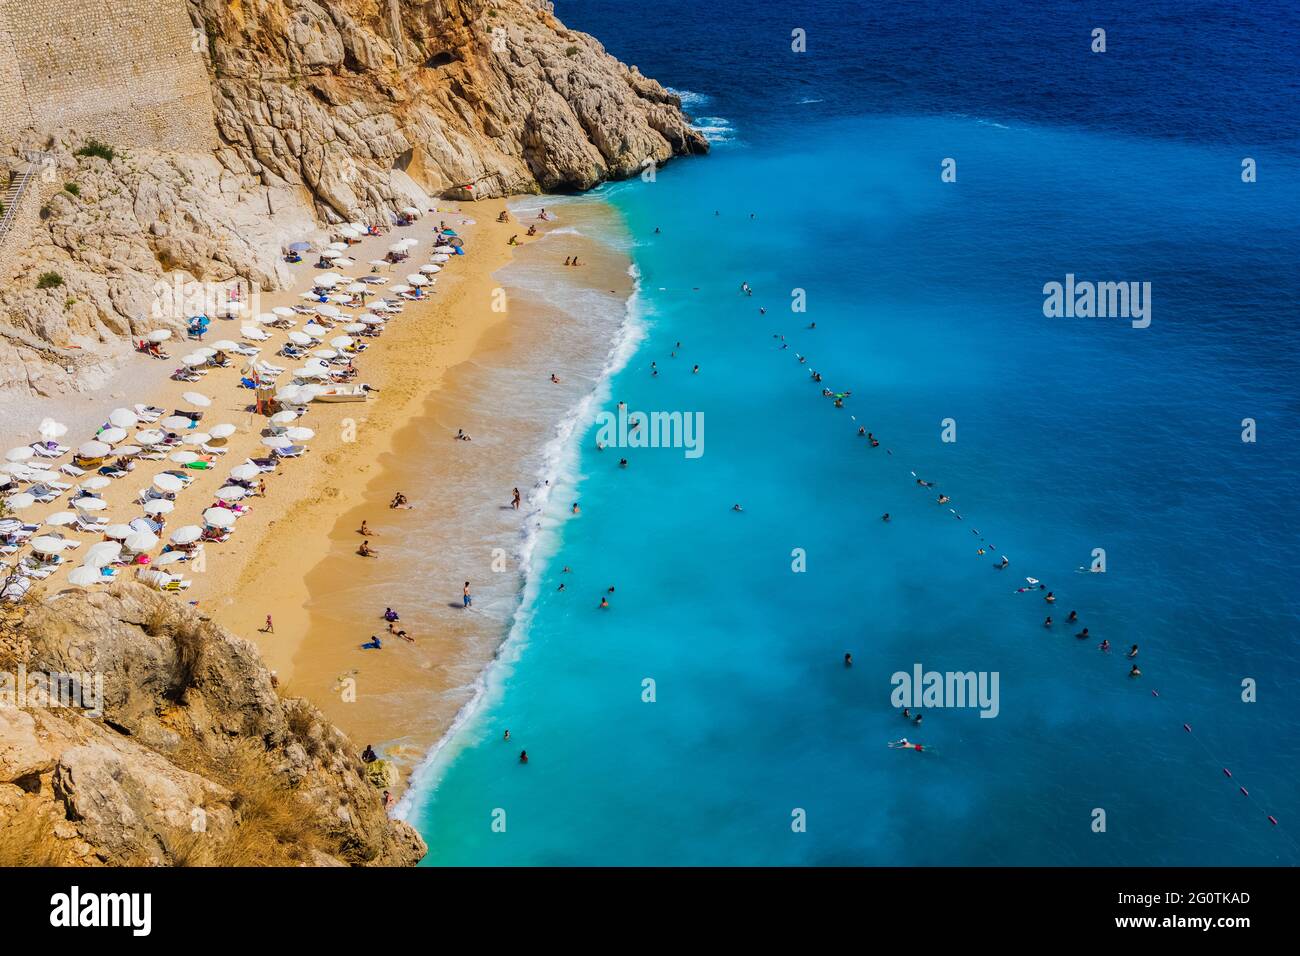 Vue aérienne de la plage de Kaputas à Kas, Kalkan, Antalya, Turquie. Méthode Lycienne. Concept été et vacances Banque D'Images